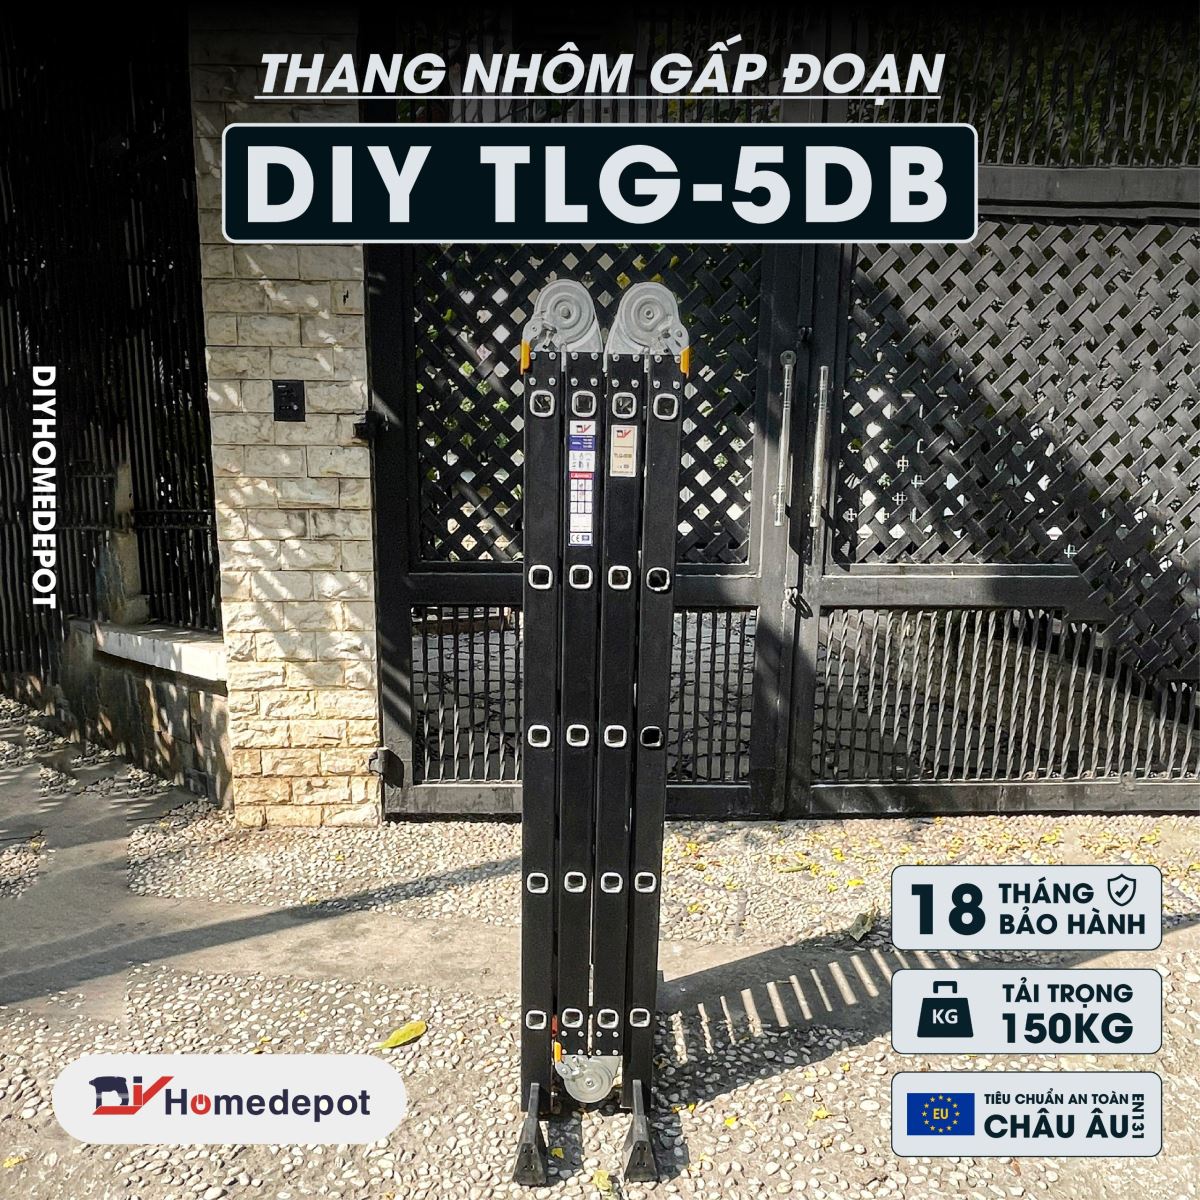 Thang nhôm bốn đoạn DIY TLG-5DB